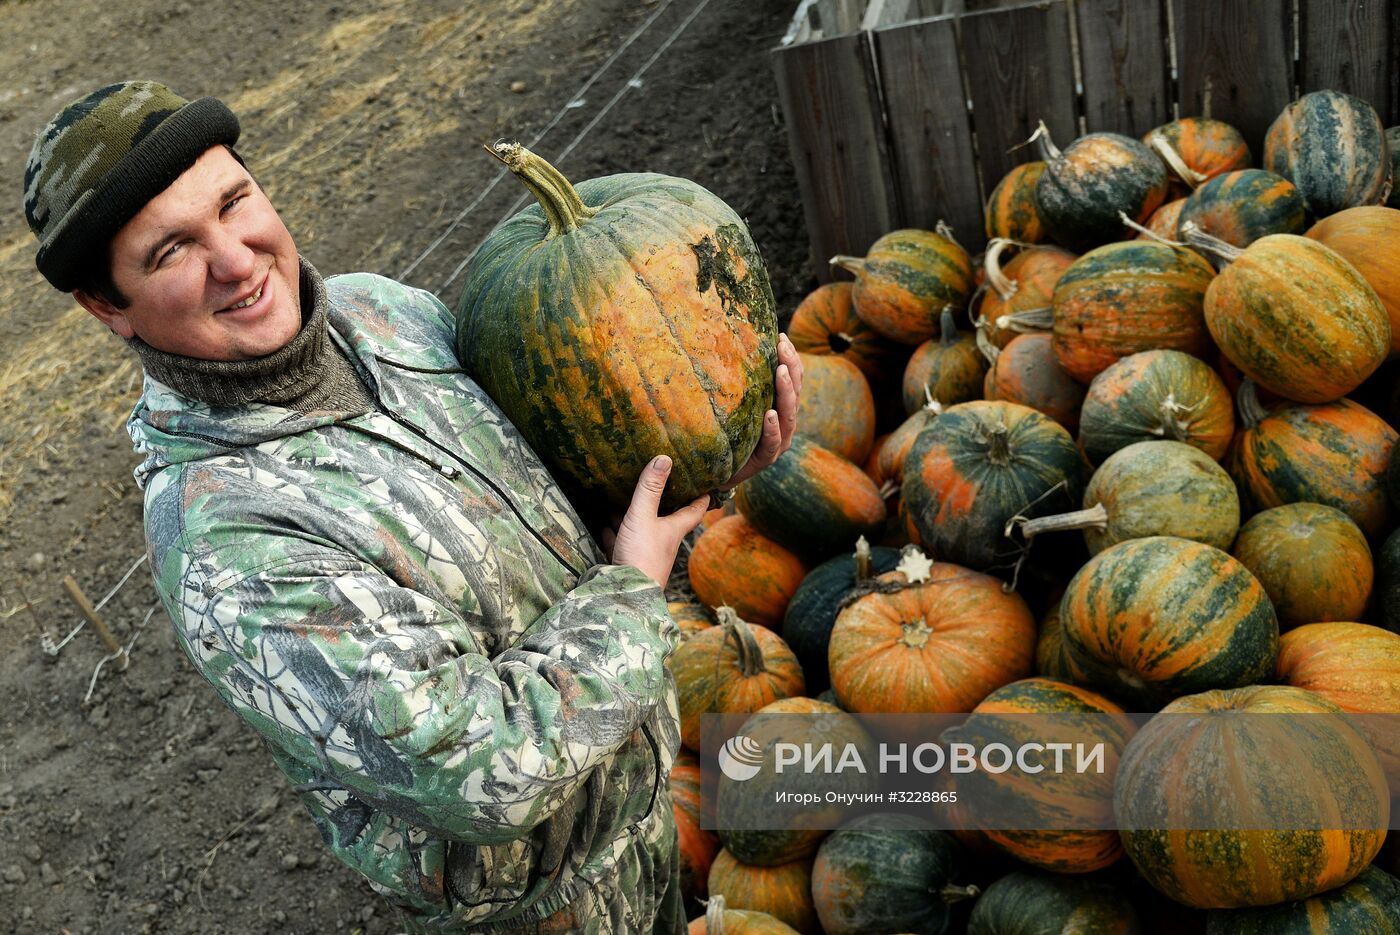 Участник программы "Дальневосточный гектар" Иван Панин в Хабаровском крае